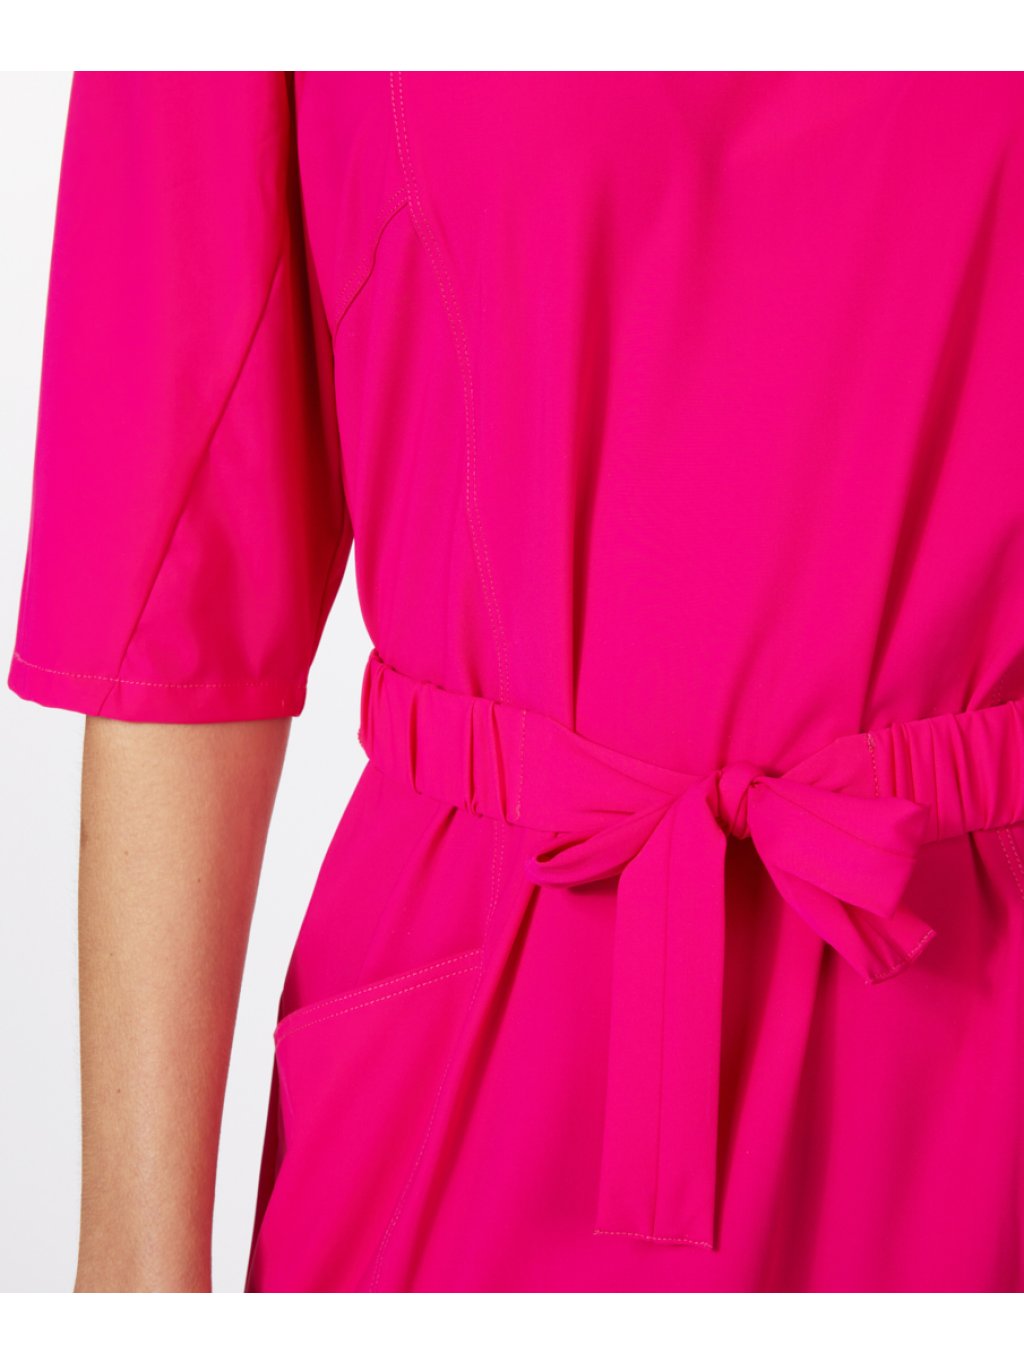 Šaty Esqualo 5017 růžové pink s puff rukávem